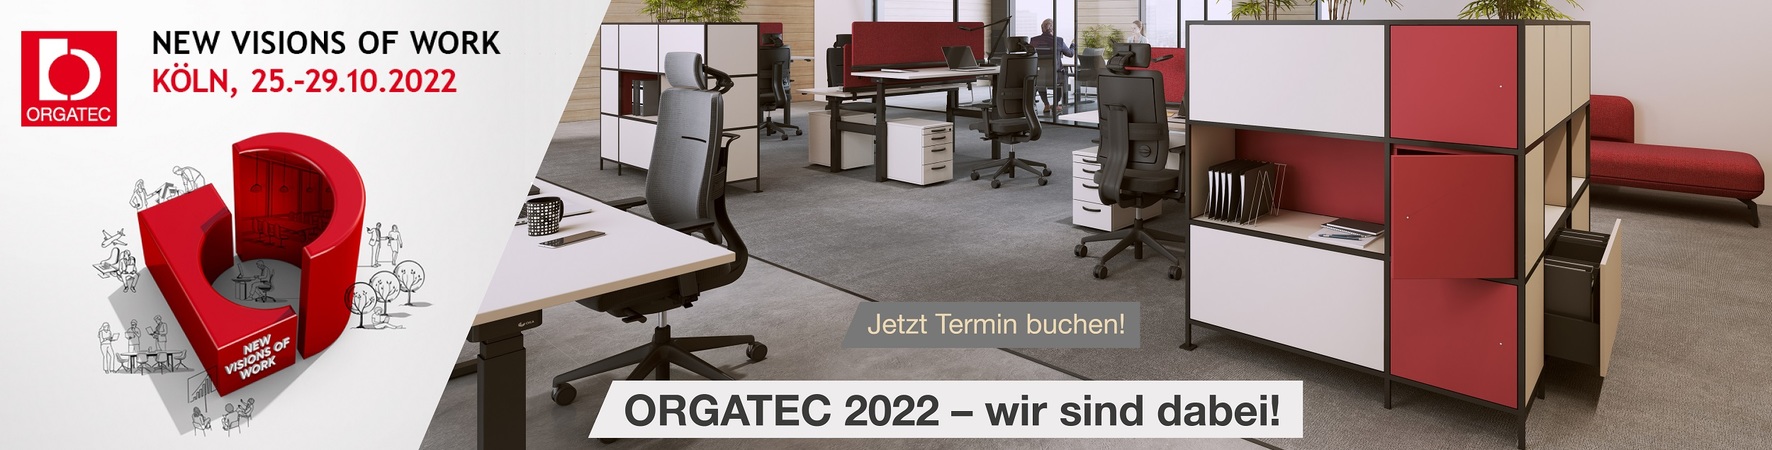 Startseiten-Banner ORGATEC 2022